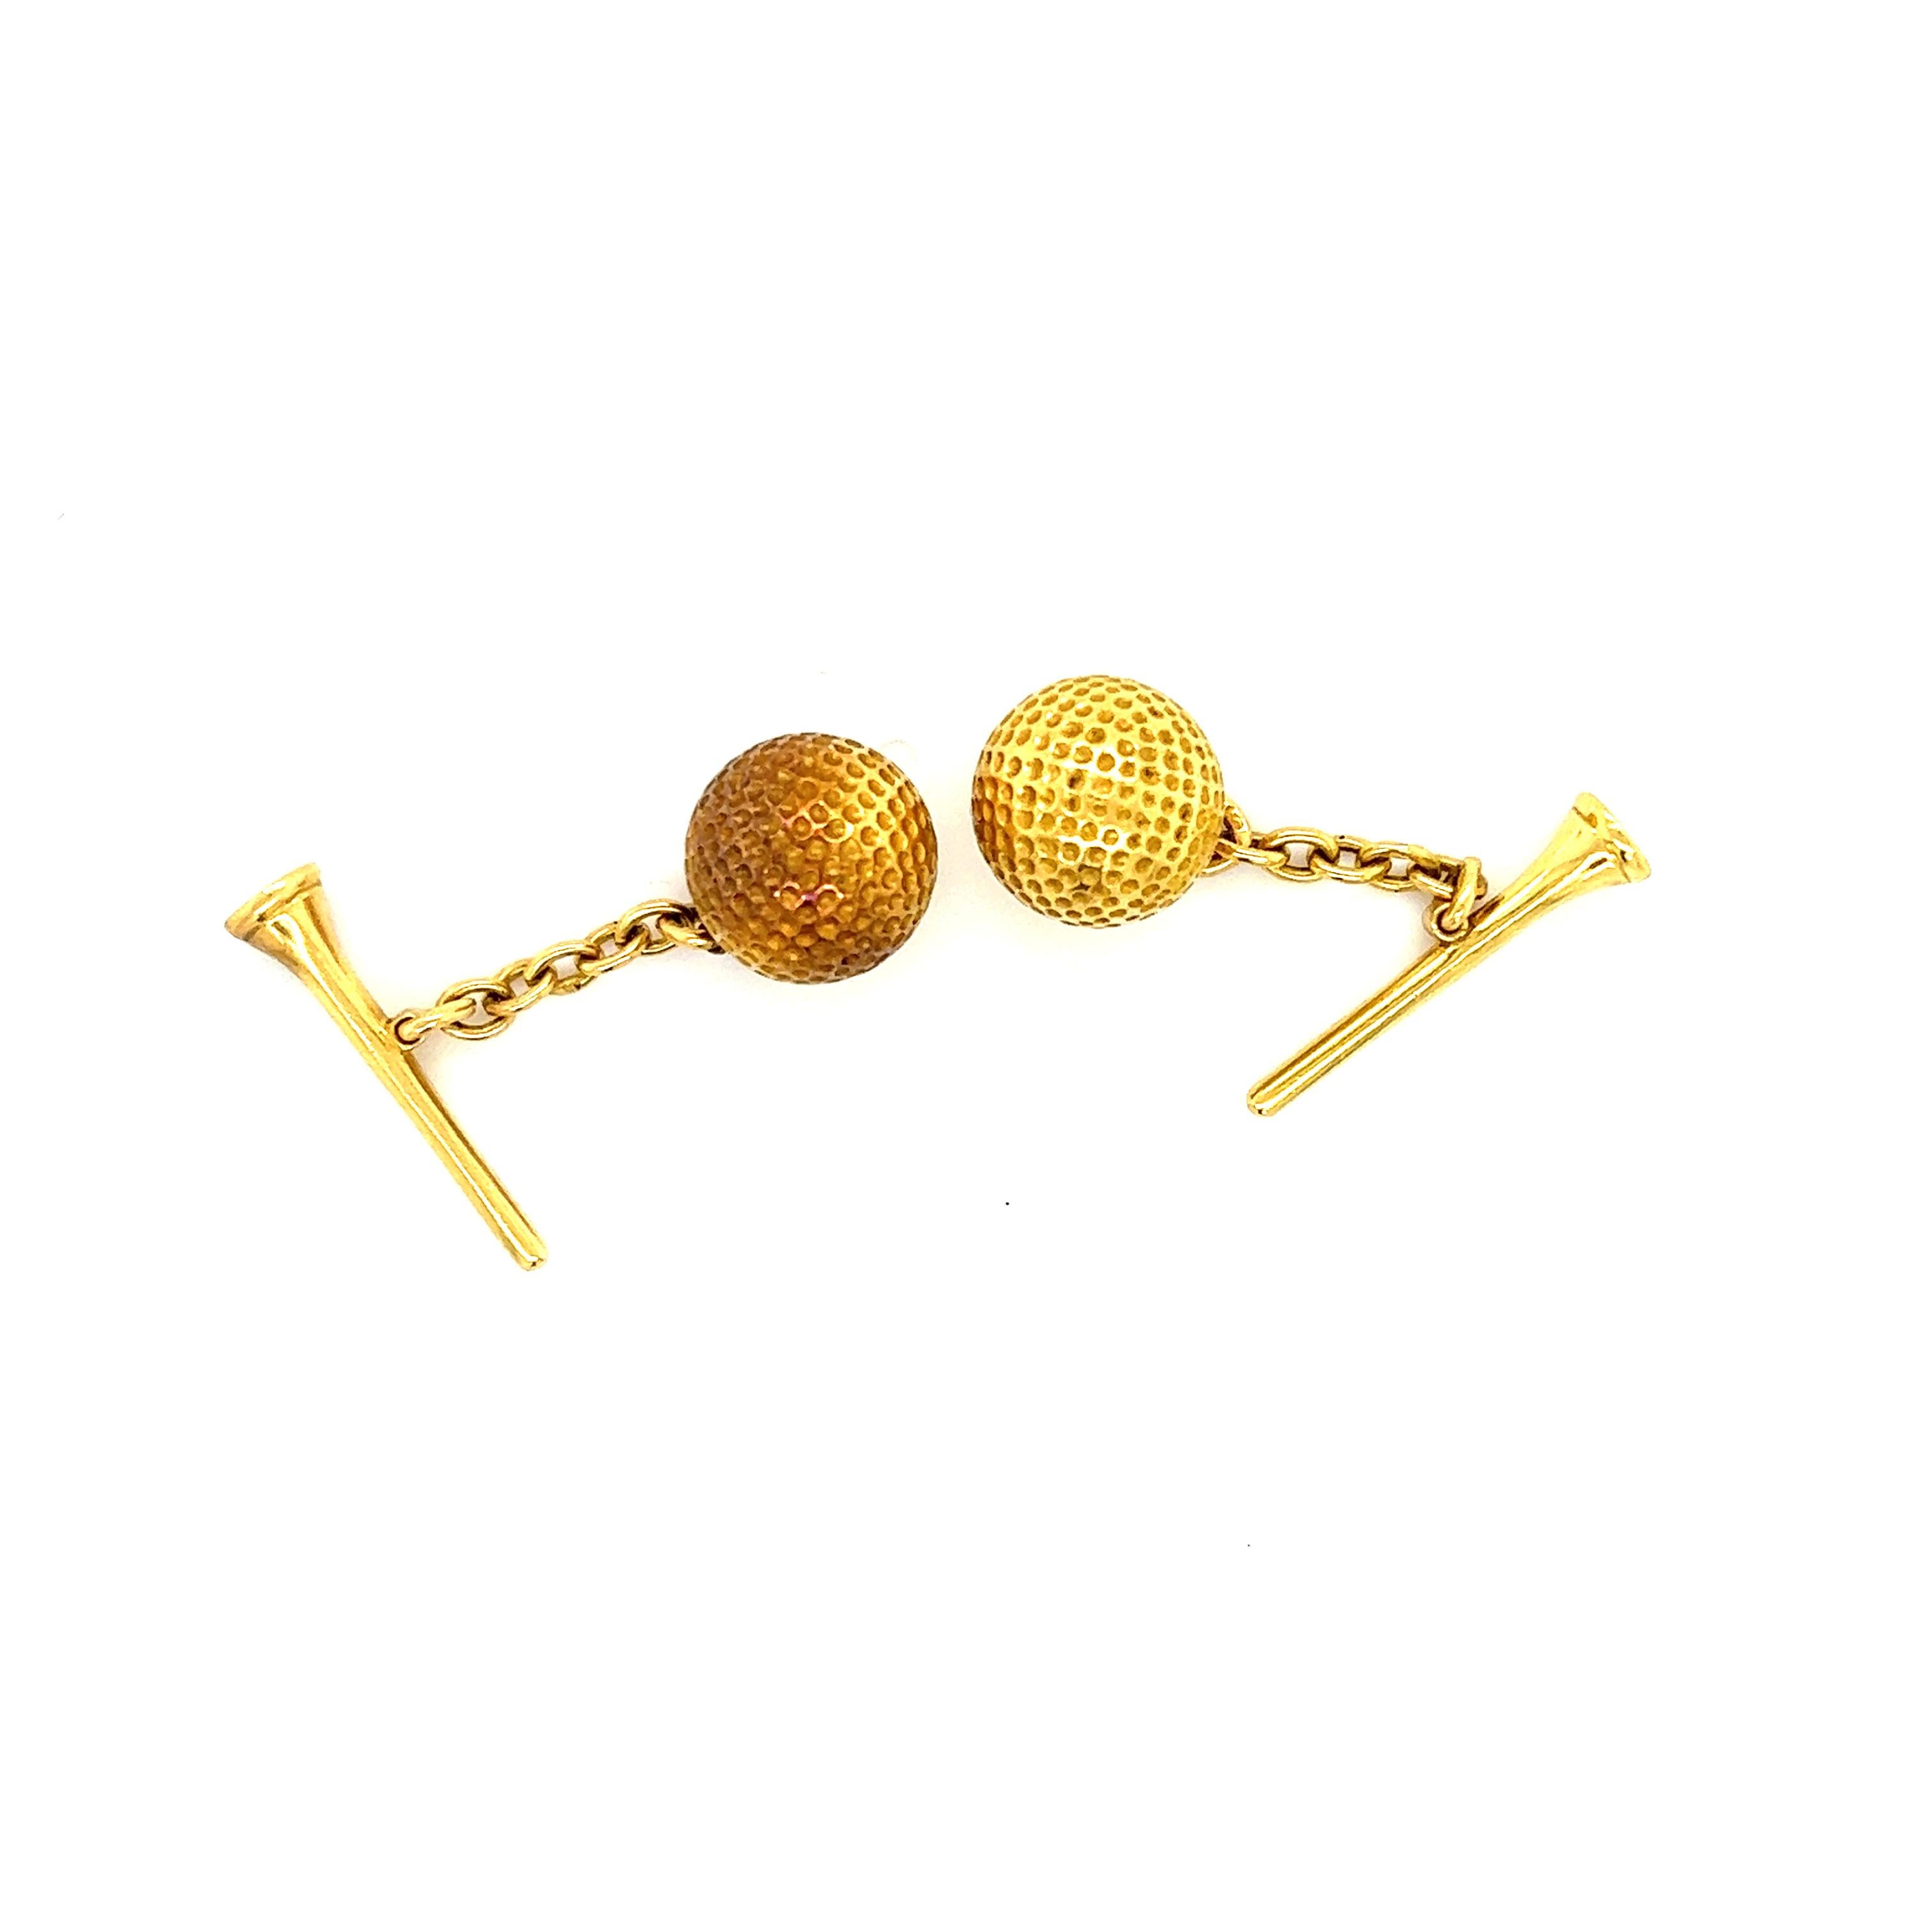 Diese handgefertigten Manschettenknöpfe aus 18-karätigem Gelbgold im französischen Retro-Stil zeigen eine fantastische Handwerkskunst. Das Paar zeigt ein Golfthema, da ein fein detaillierter Golfball mit einem Abschlag verbunden ist. Das Paar ist in